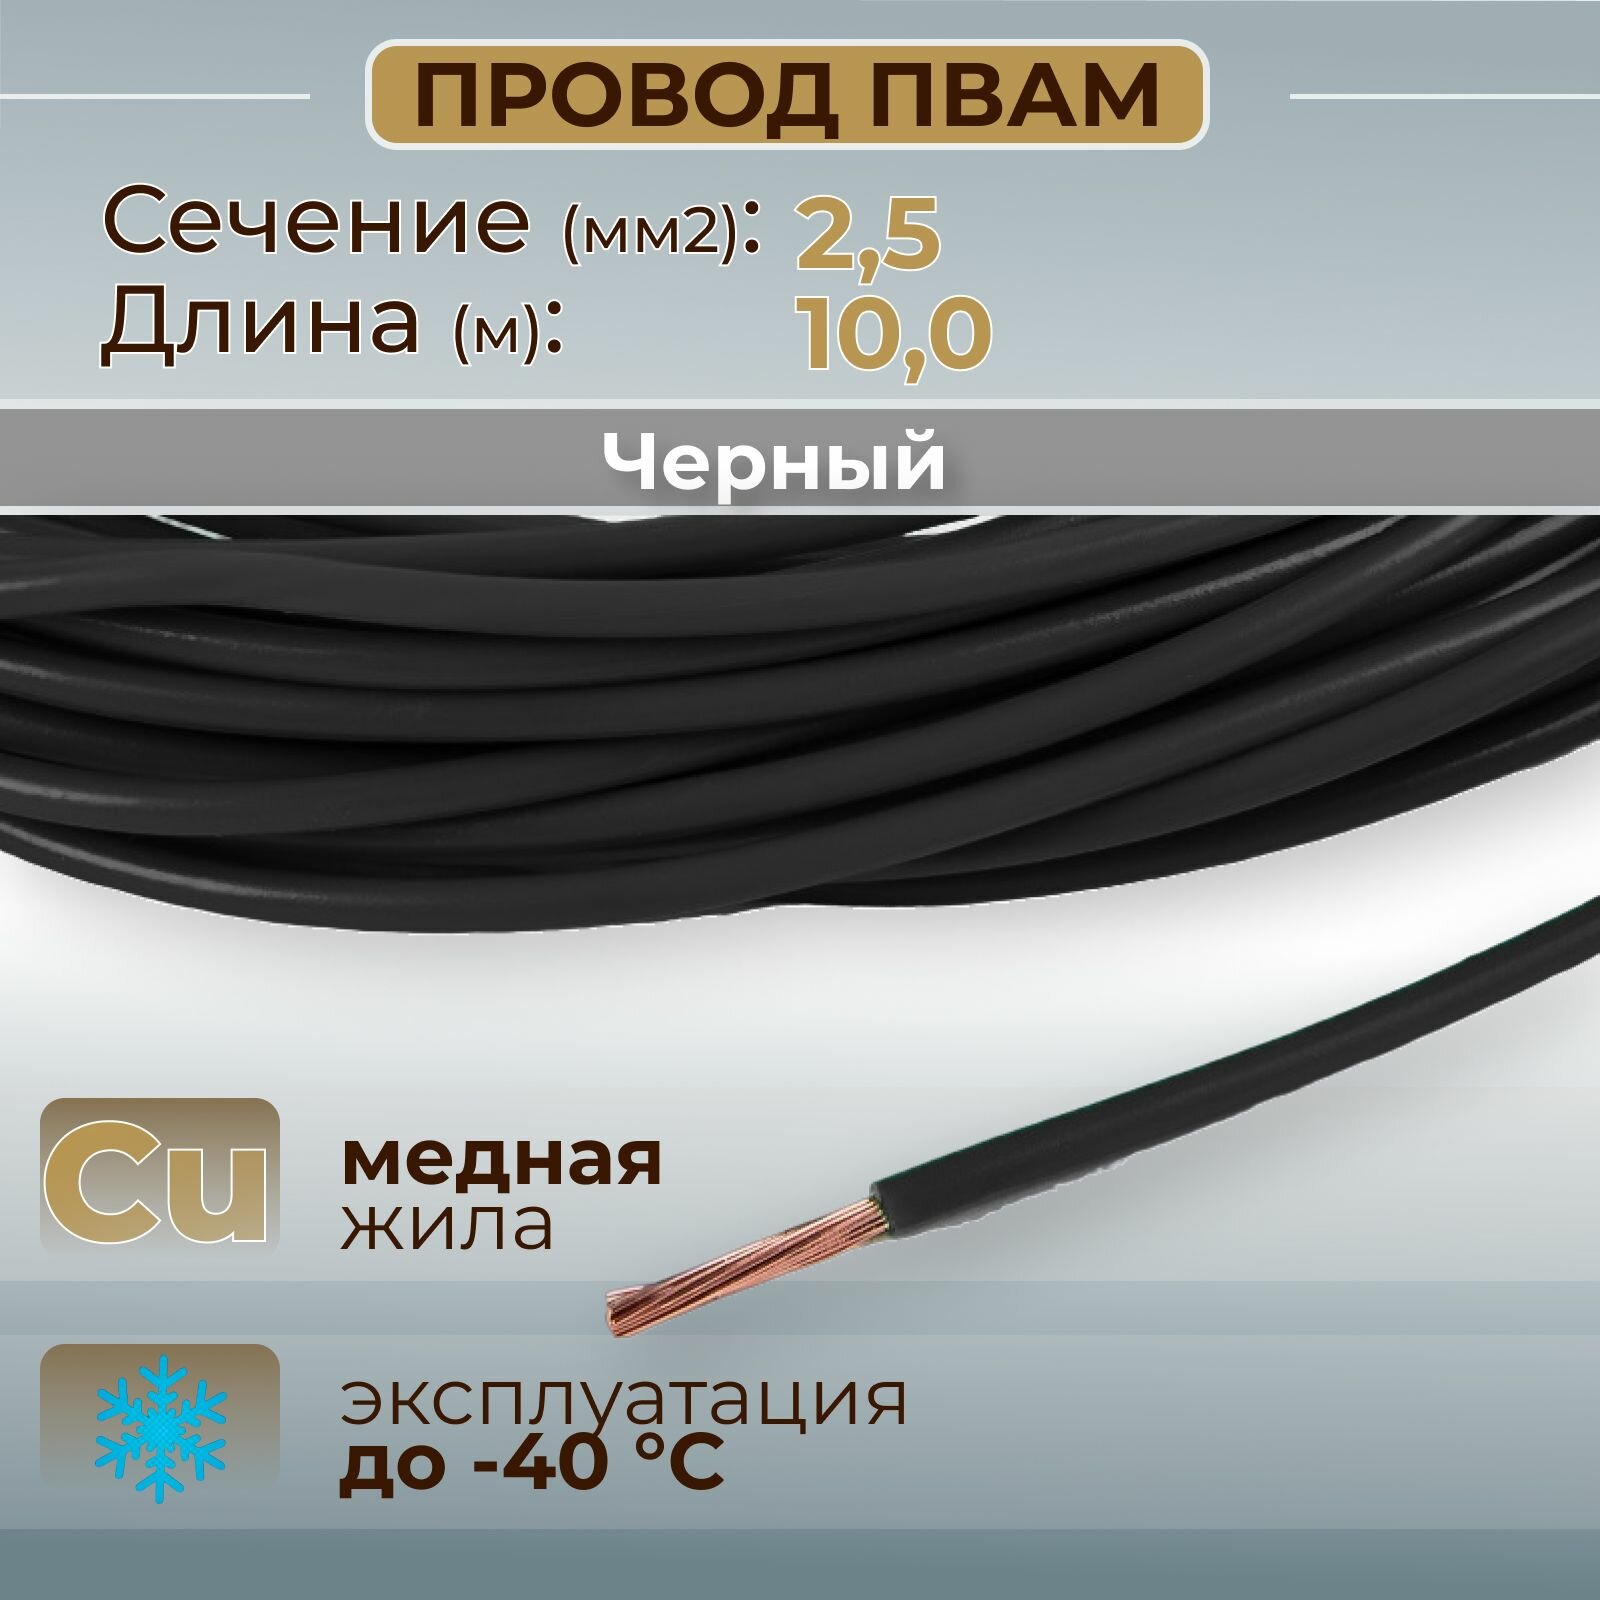 Провода автомобильные пвам цвет черный с сечением жилы 2,5 кв. мм, длина 10м